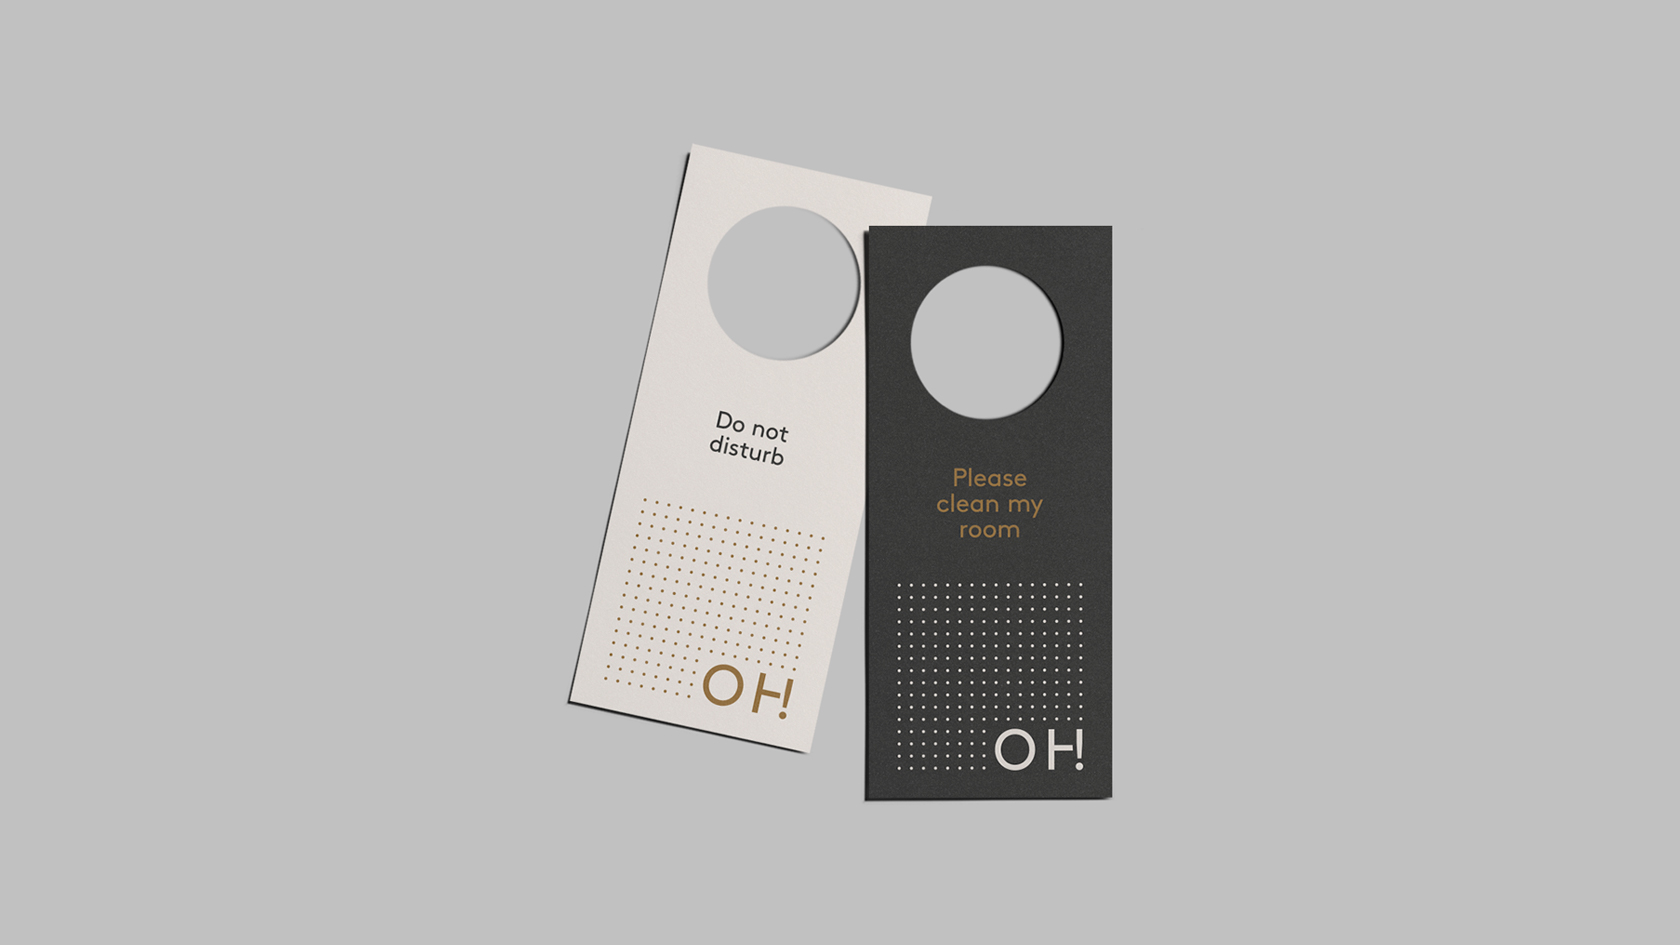 Diseño de identidad corporativa para hotel Ohmyloft - Diseño de gráfica aplicada - Estudio de diseño Valencia Pixelarte